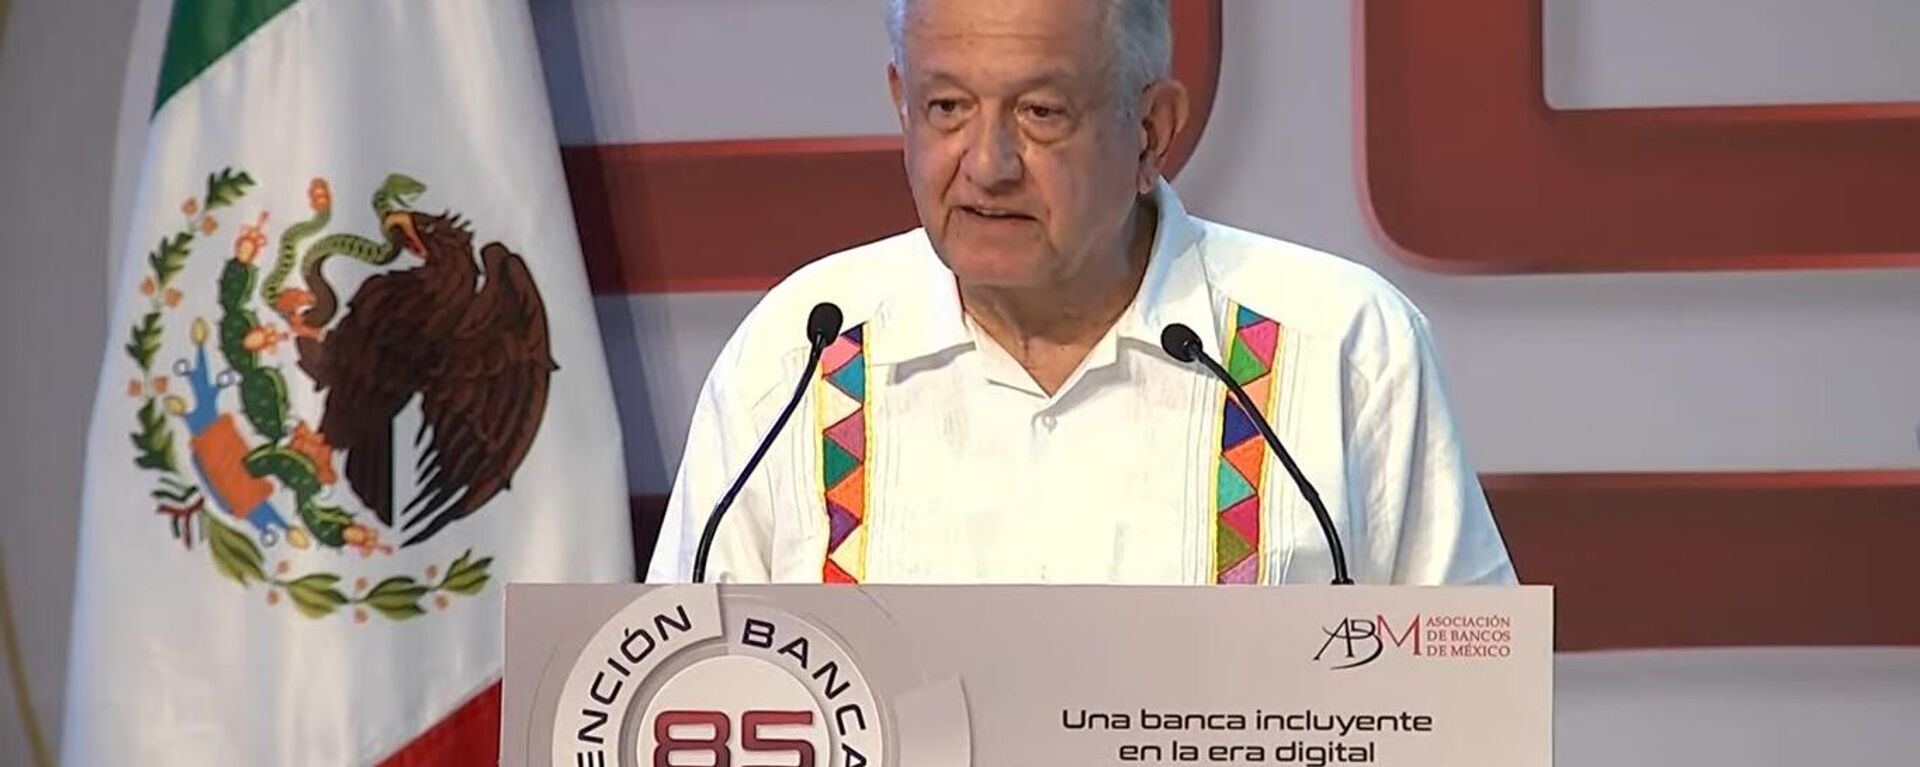 El presidente mexicano Andrés Manuel López Obrador durante la 85 Convención Bancaria de México - Sputnik Mundo, 1920, 25.03.2022